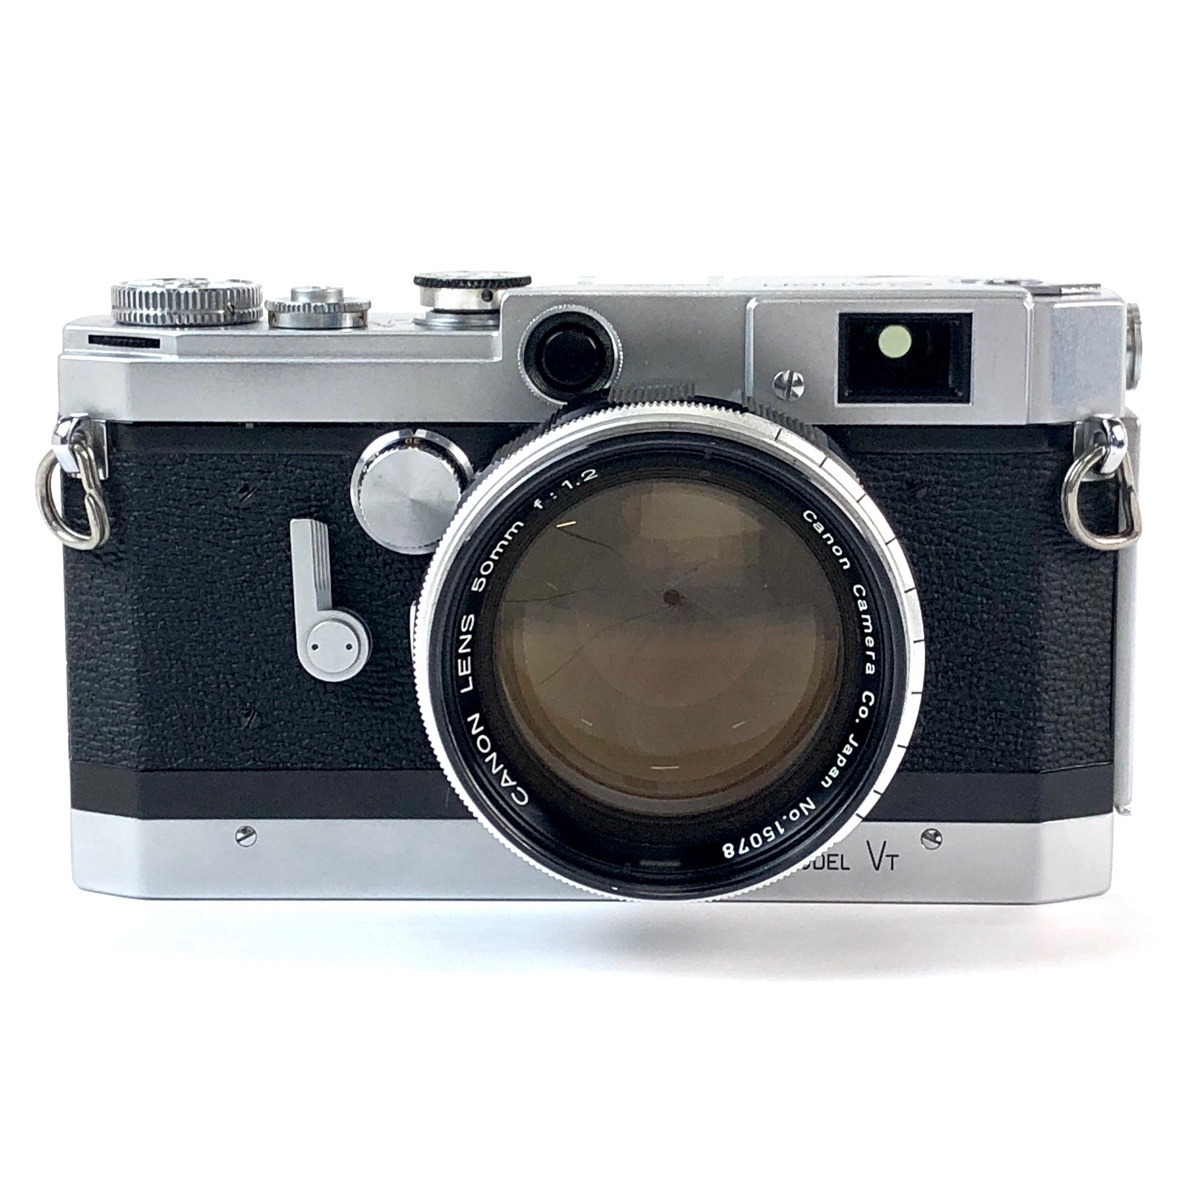 キヤノン Canon MODEL VT + 50mm F1.2 Lマウント L39 フィルム レンジファインダーカメラ 【中古】の画像1